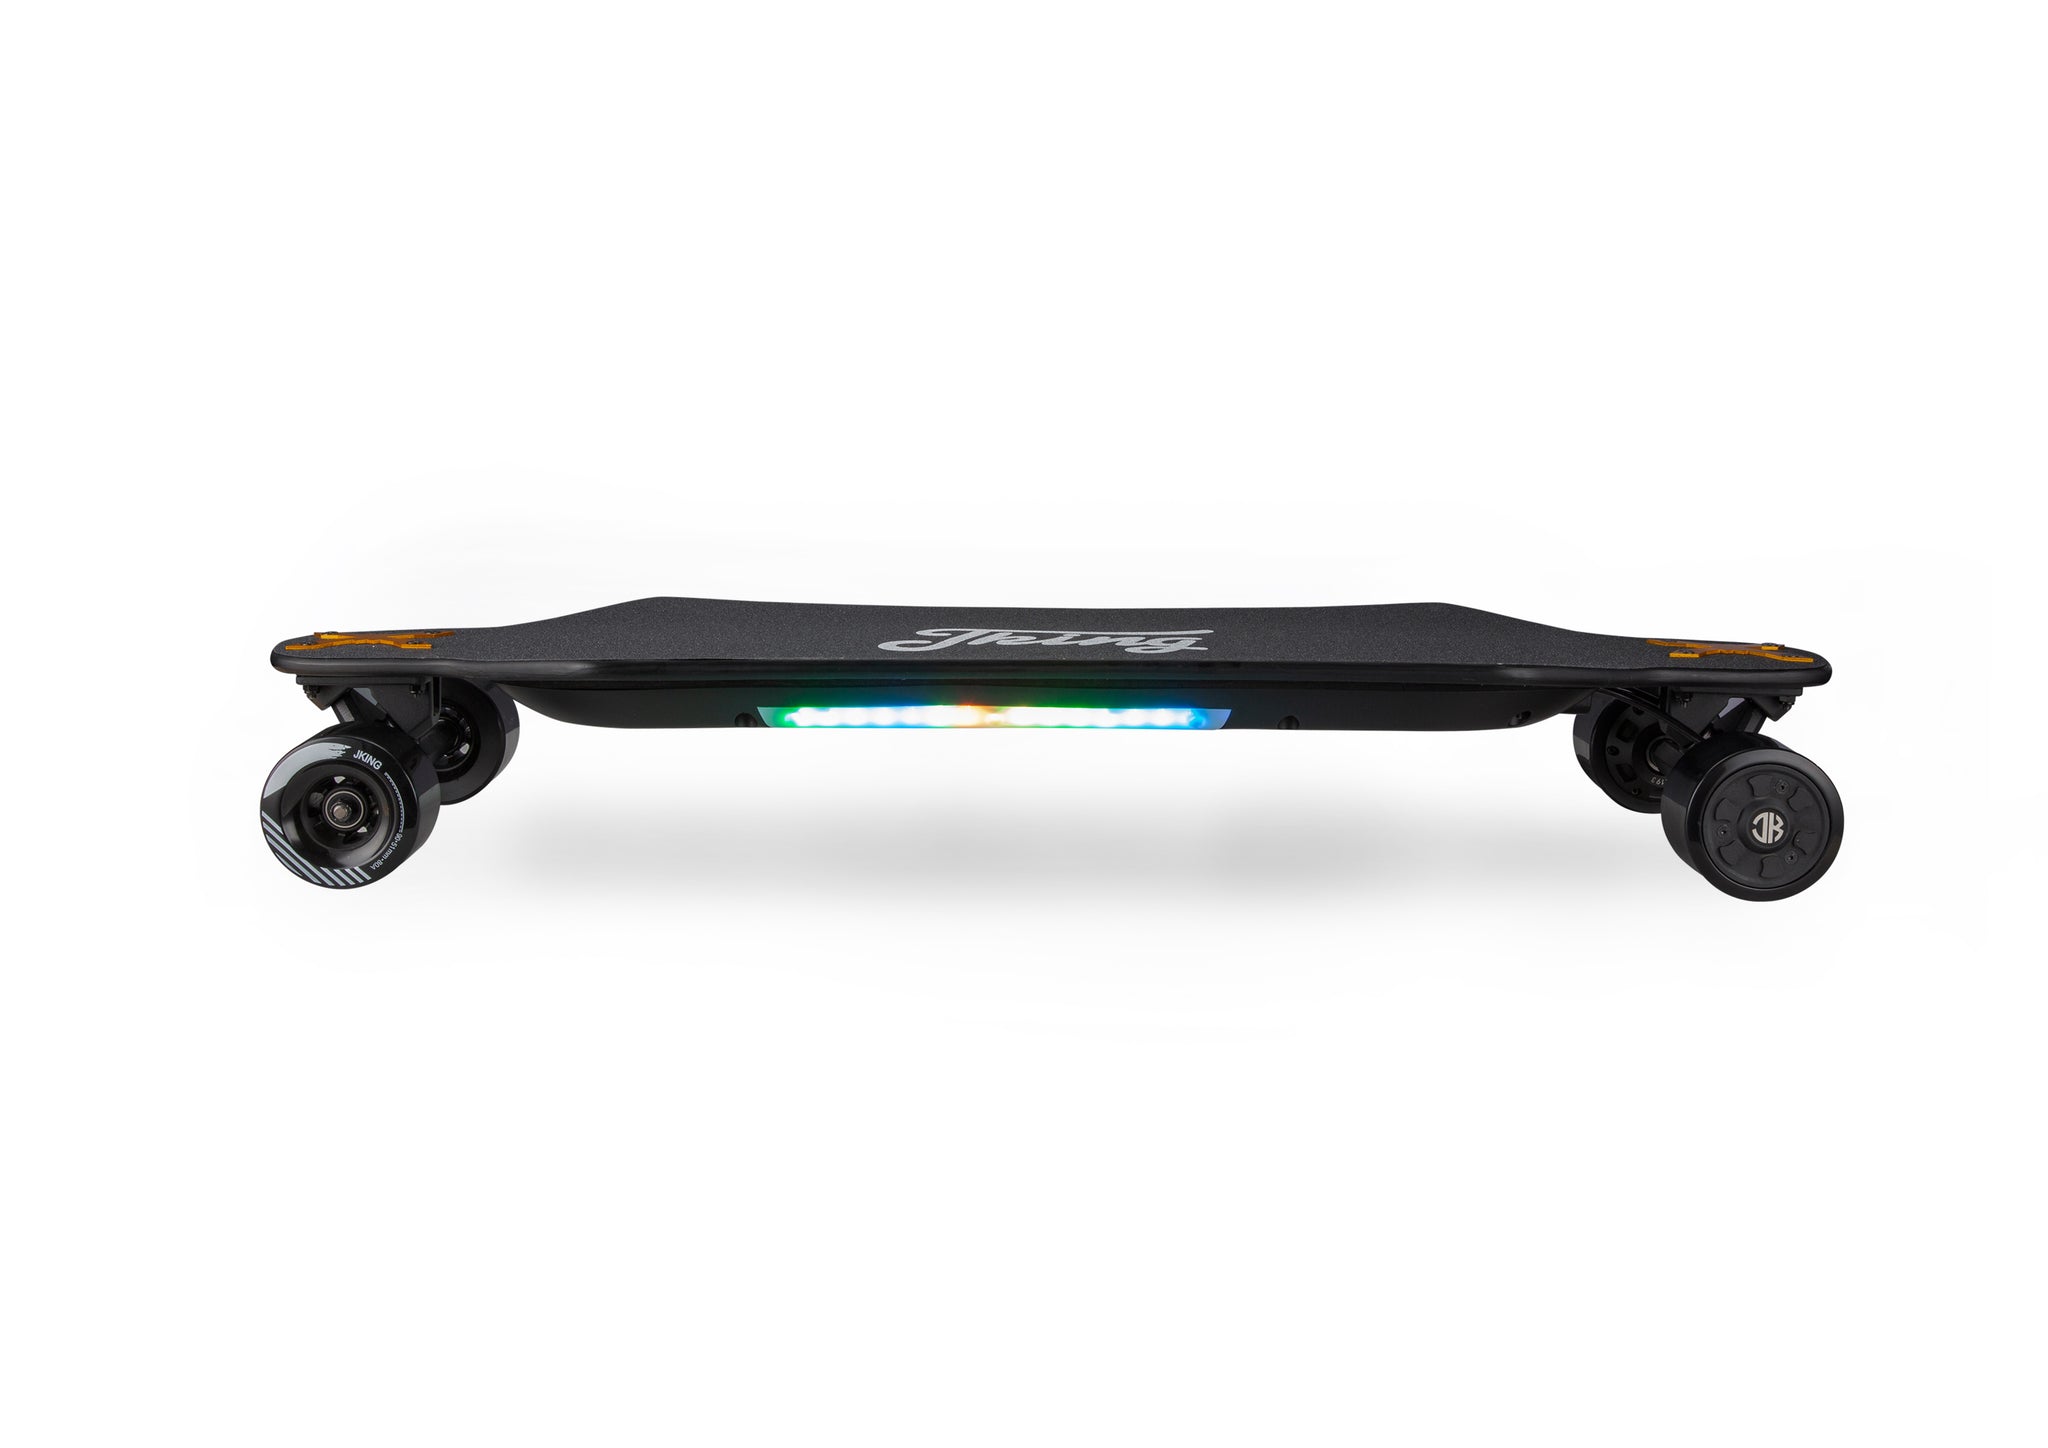 The skateboard for power:Jupiter-02